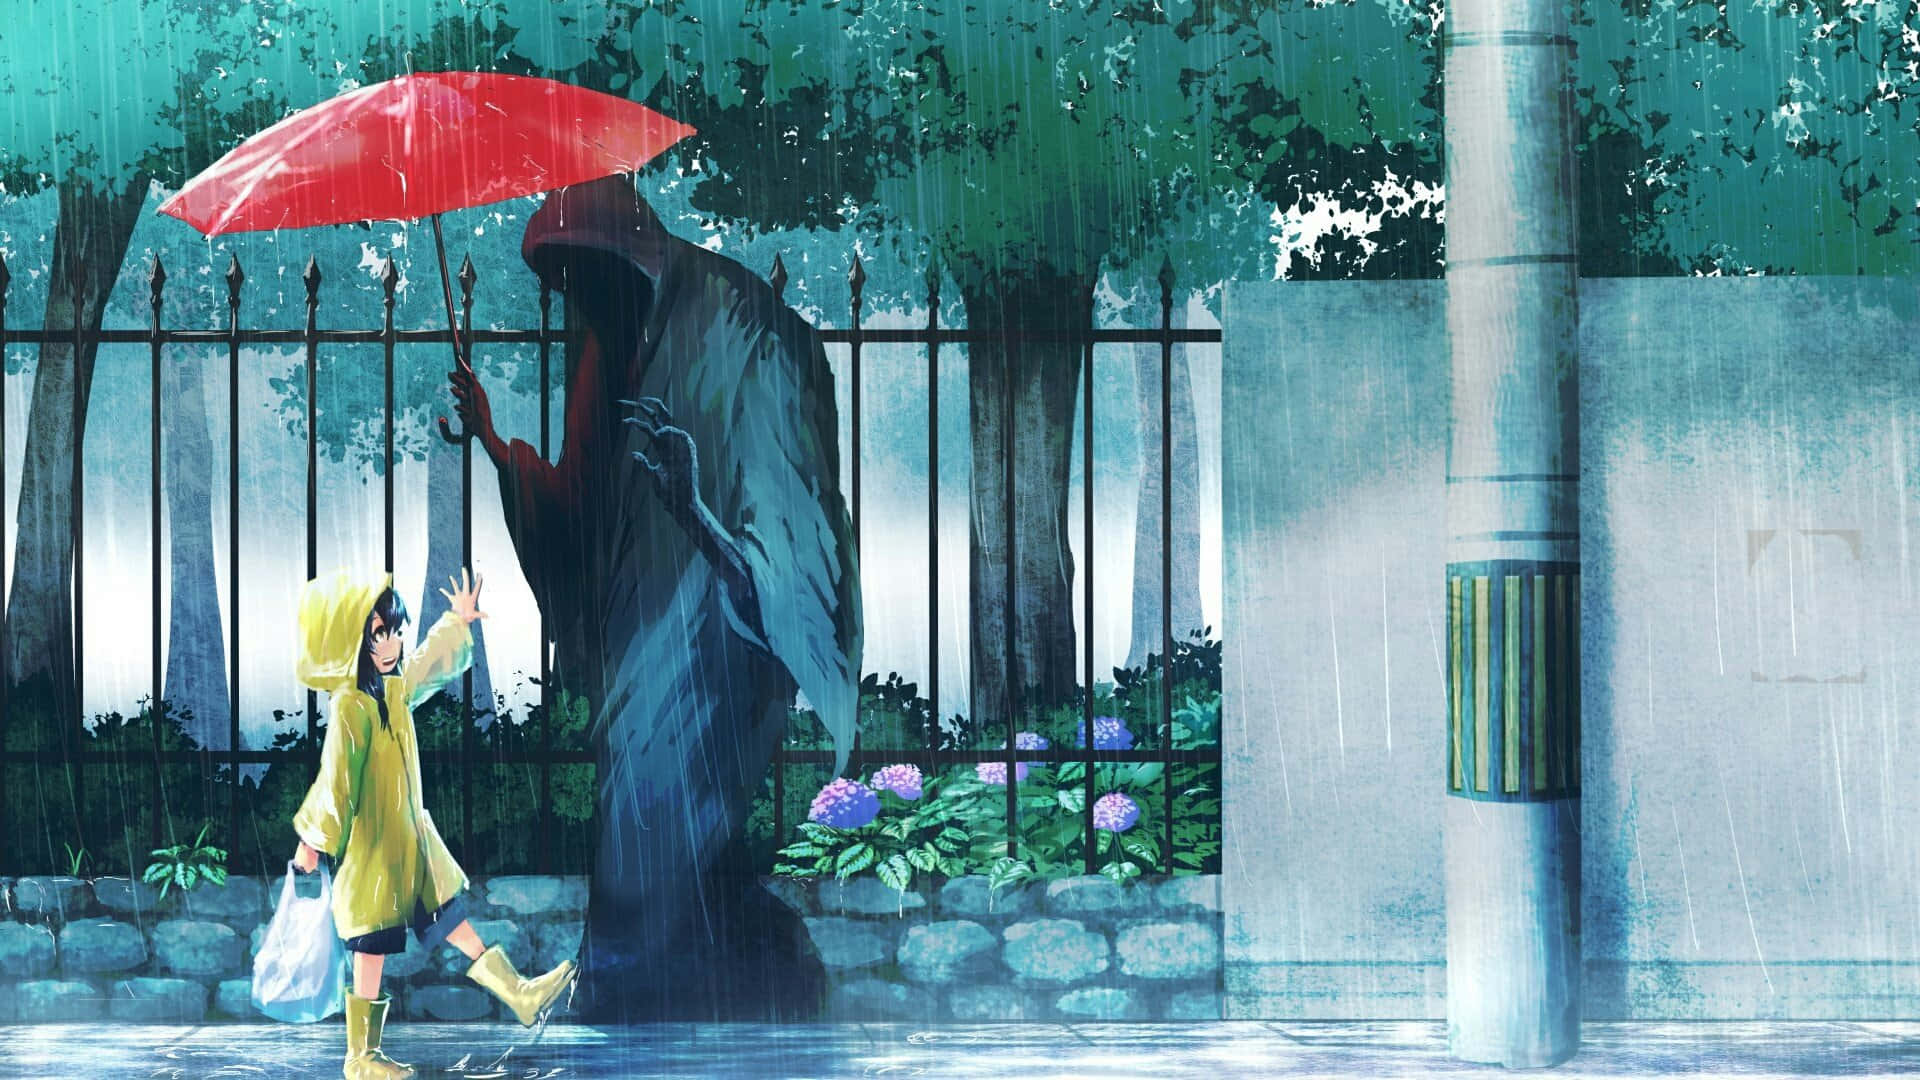 Child Meets Grim Reaper Umbrella